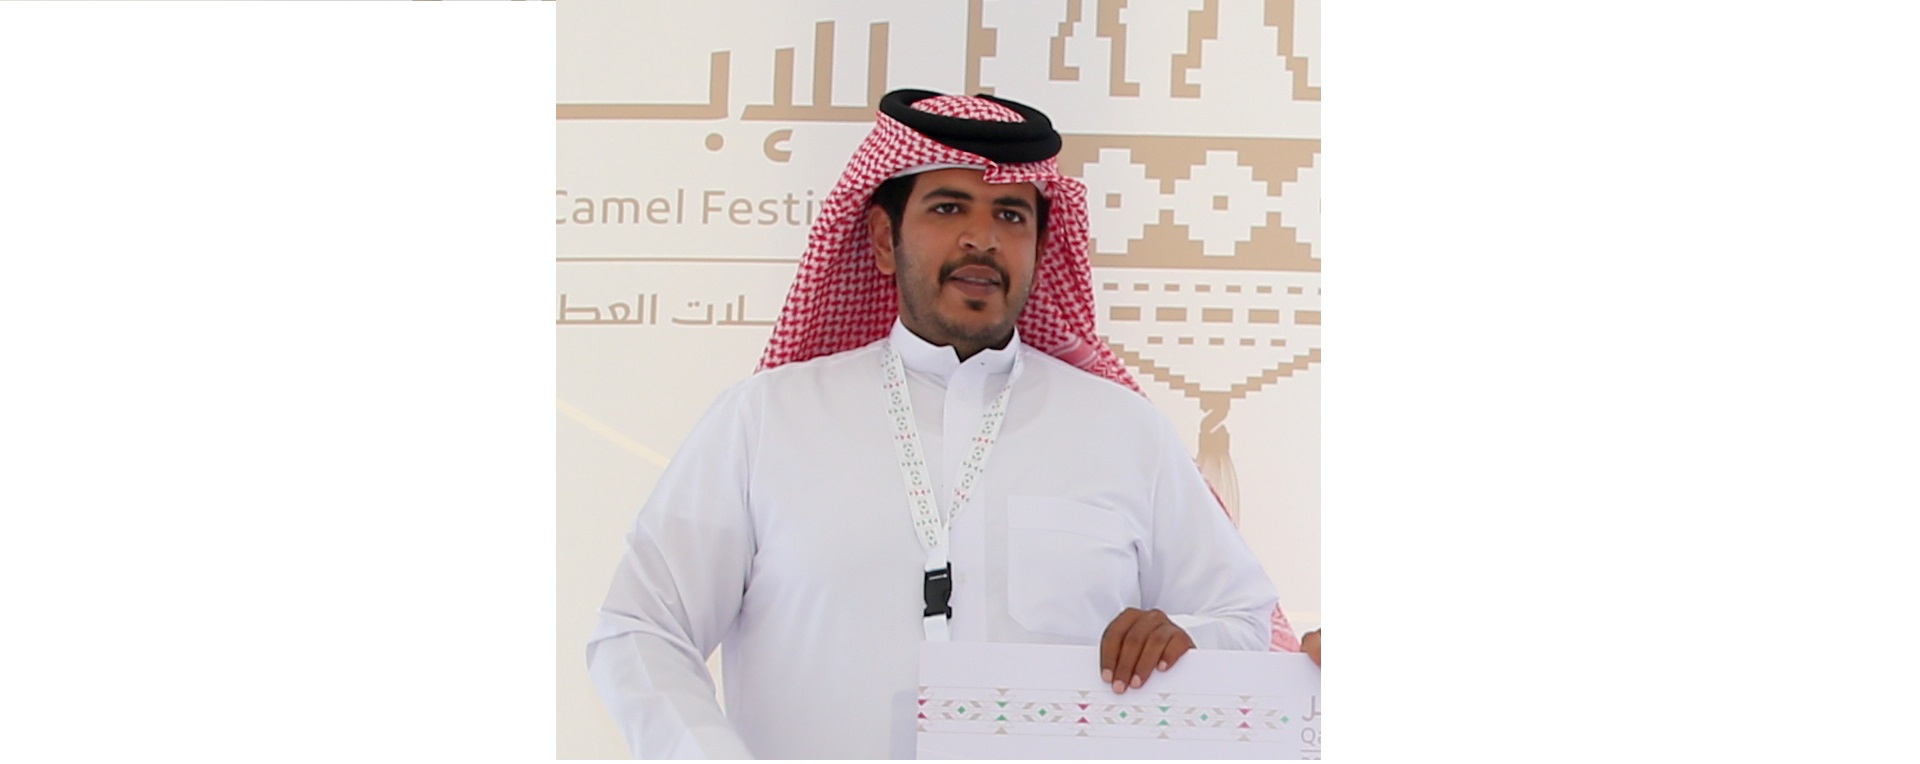 سالم الشرافي: فخور بإبقاء أقوى رموز المغاتير في دولتنا الحبيبة قطر